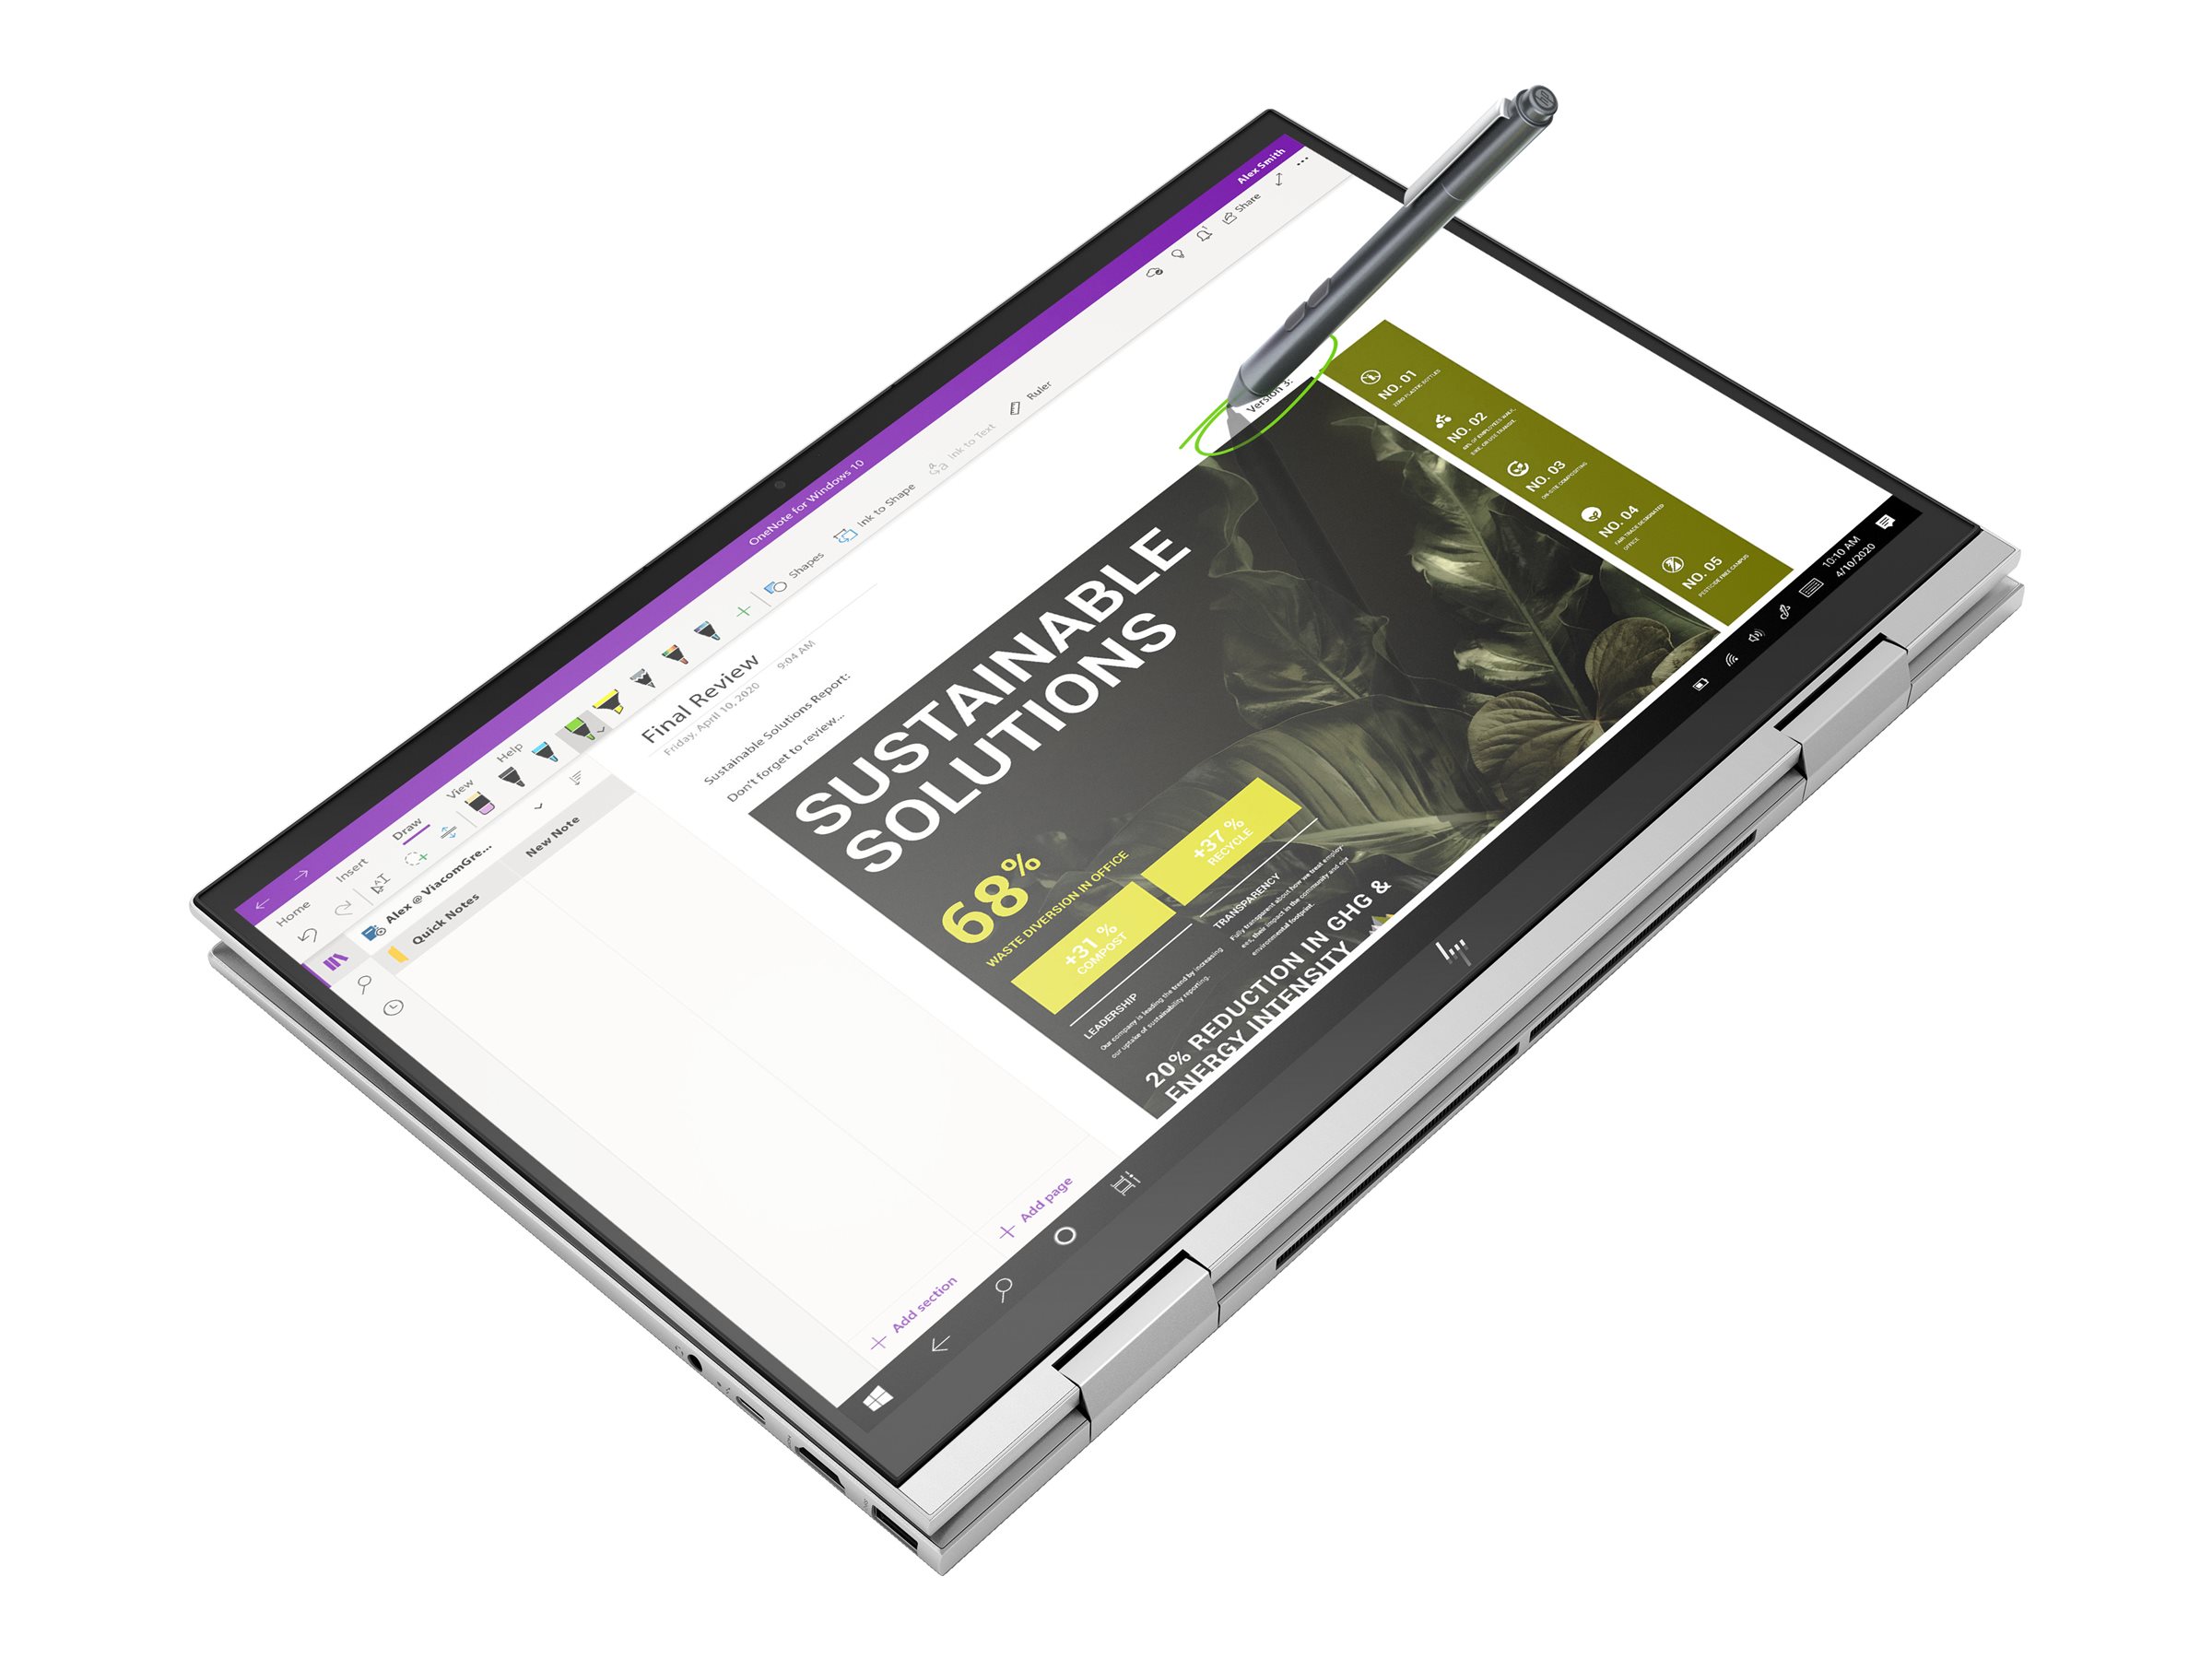 HP Pen - Stylo numérique - pour ENVY x360 Laptop; Pavilion x360 Laptop; Spectre x360 Laptop - 3V2X4AA#ABB - Dispositifs de pointage